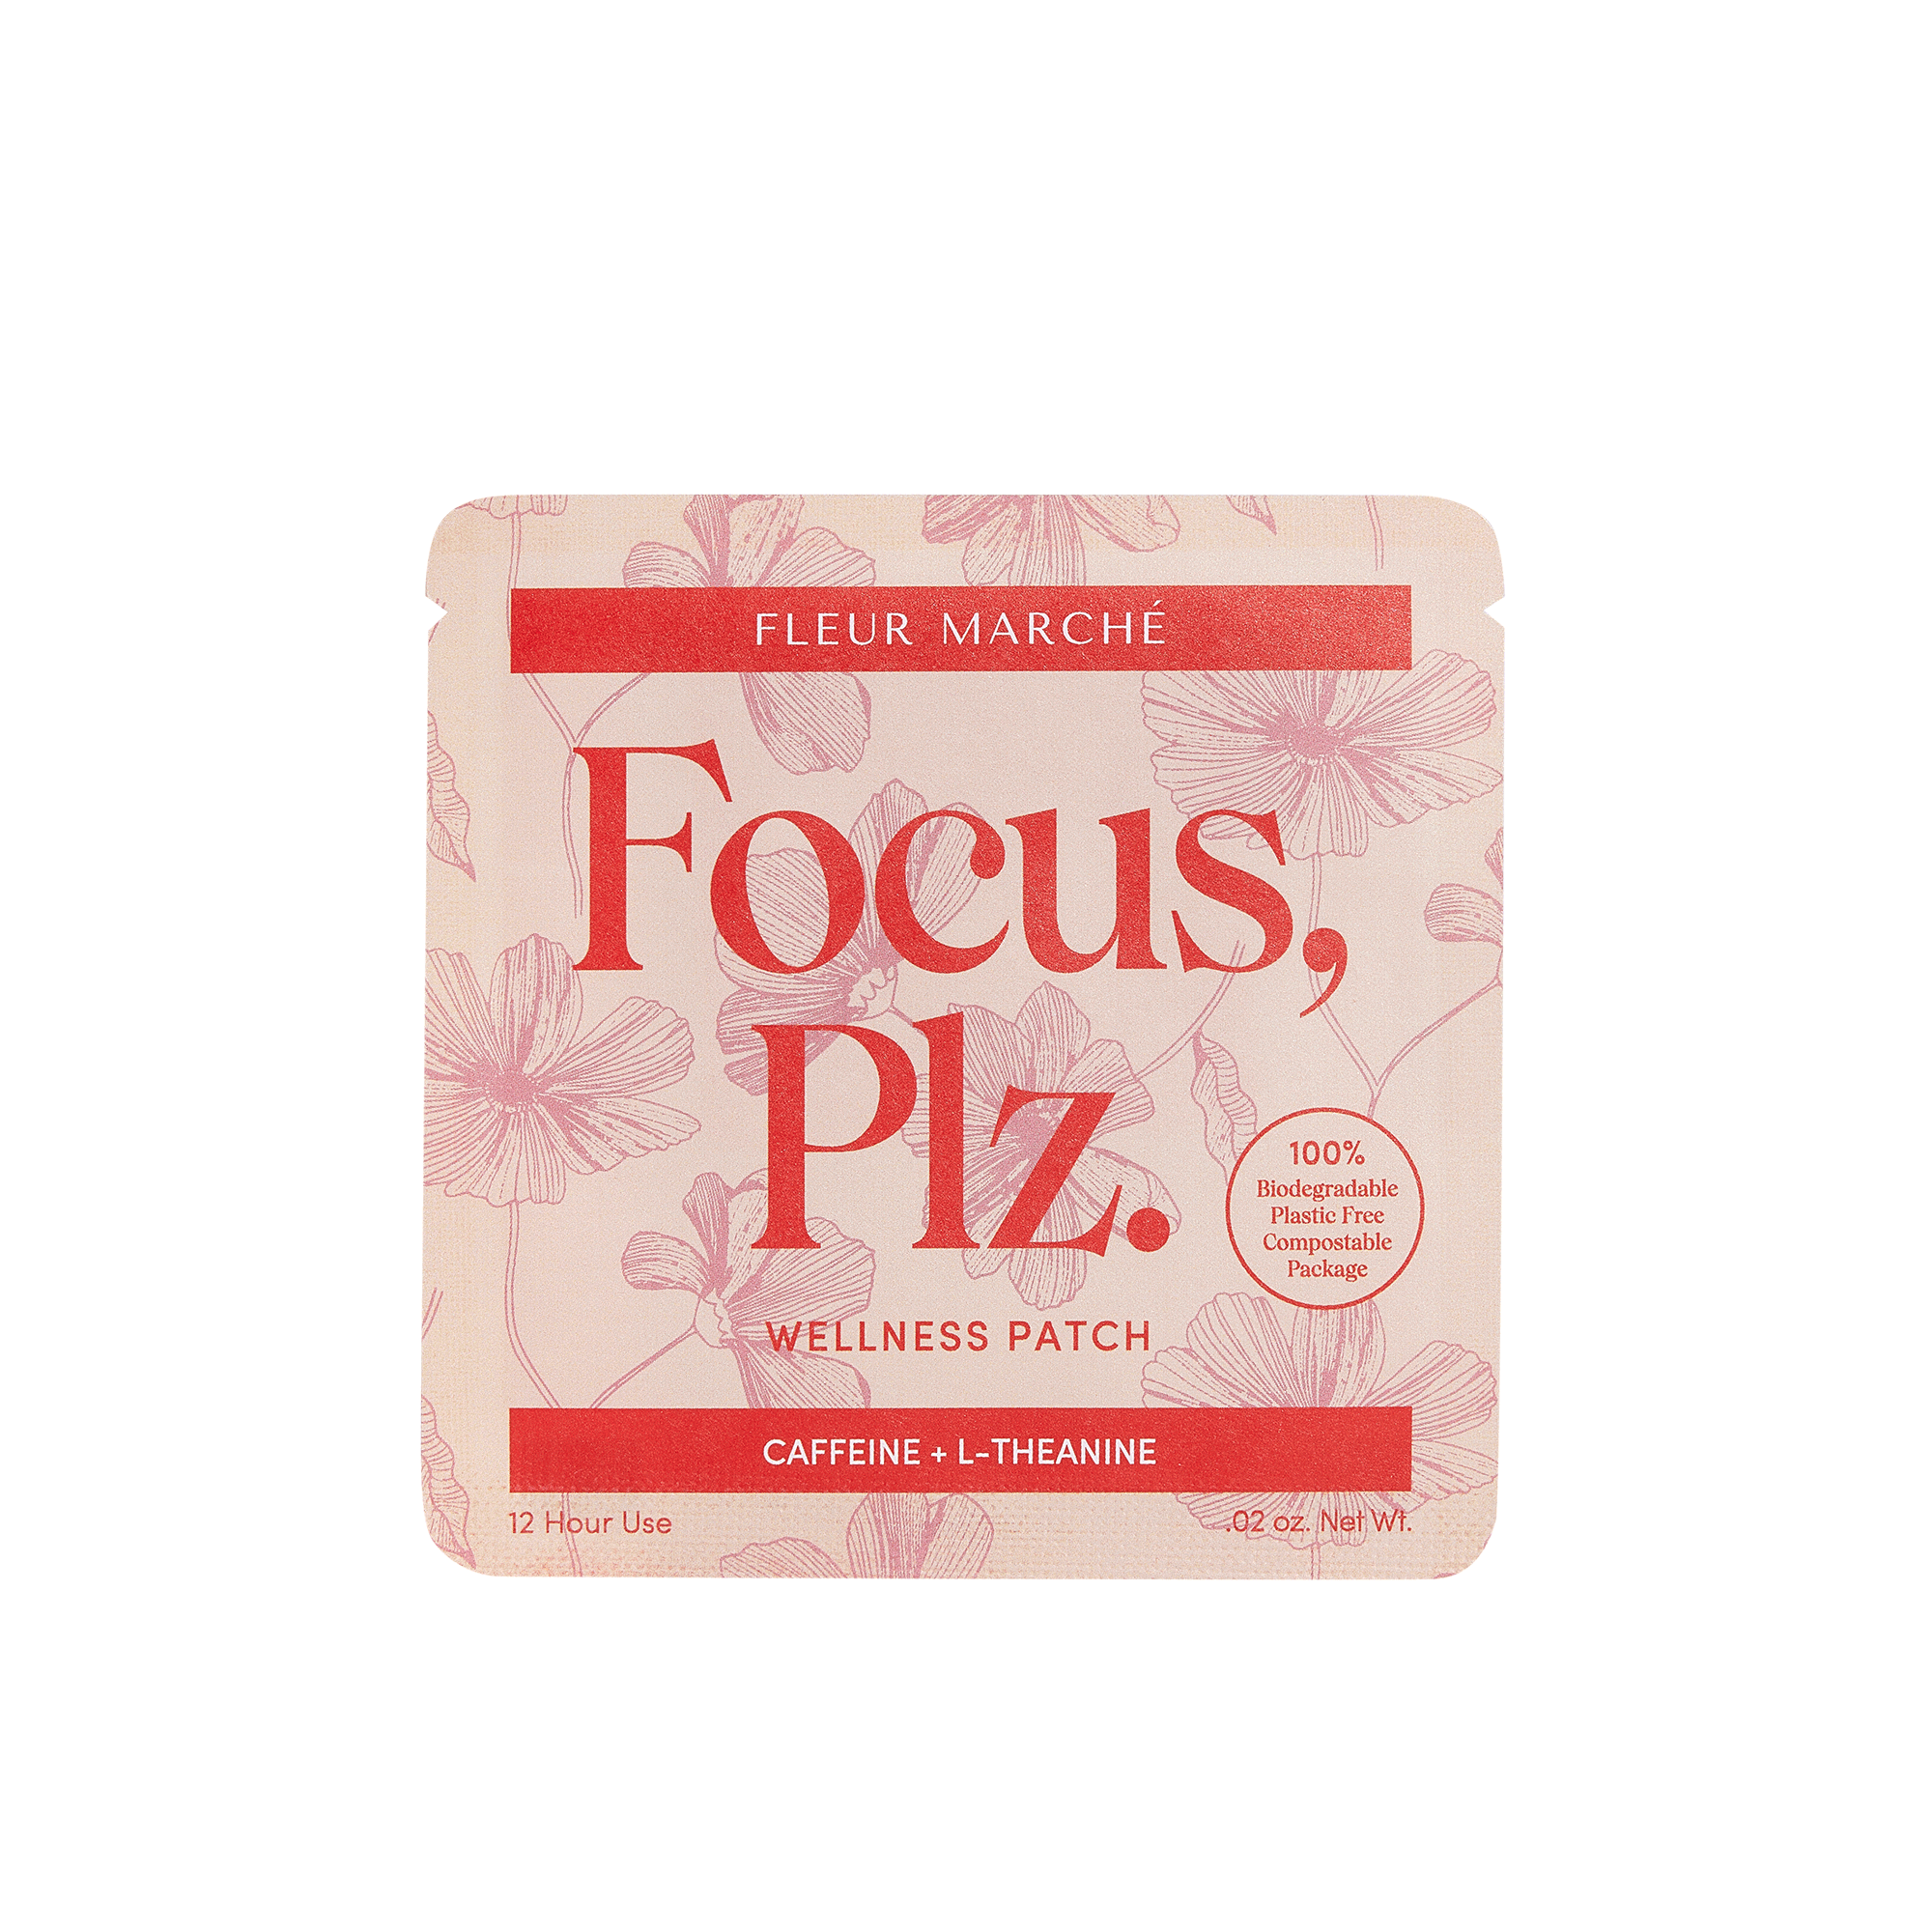 Focus Plz. container